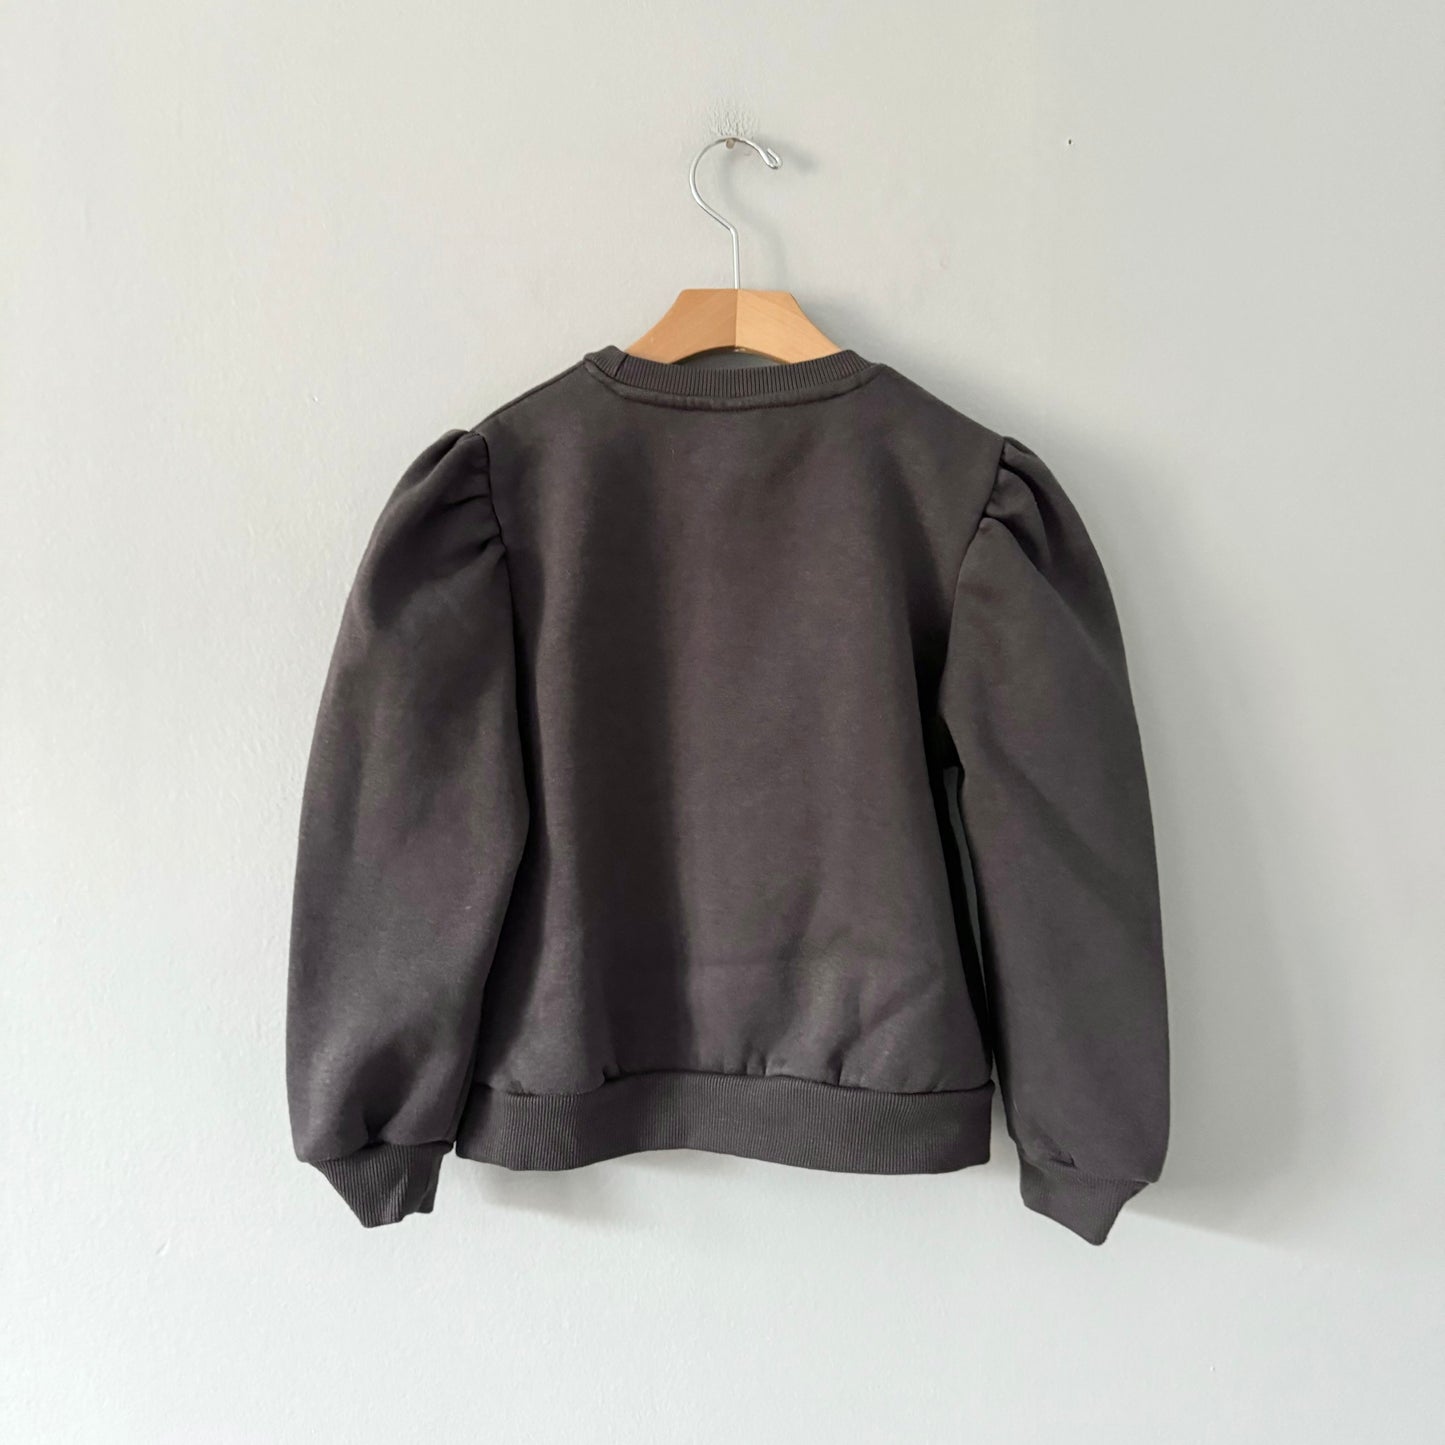 Zara / Dark grey puff shoulder sweatshirt / 8Y